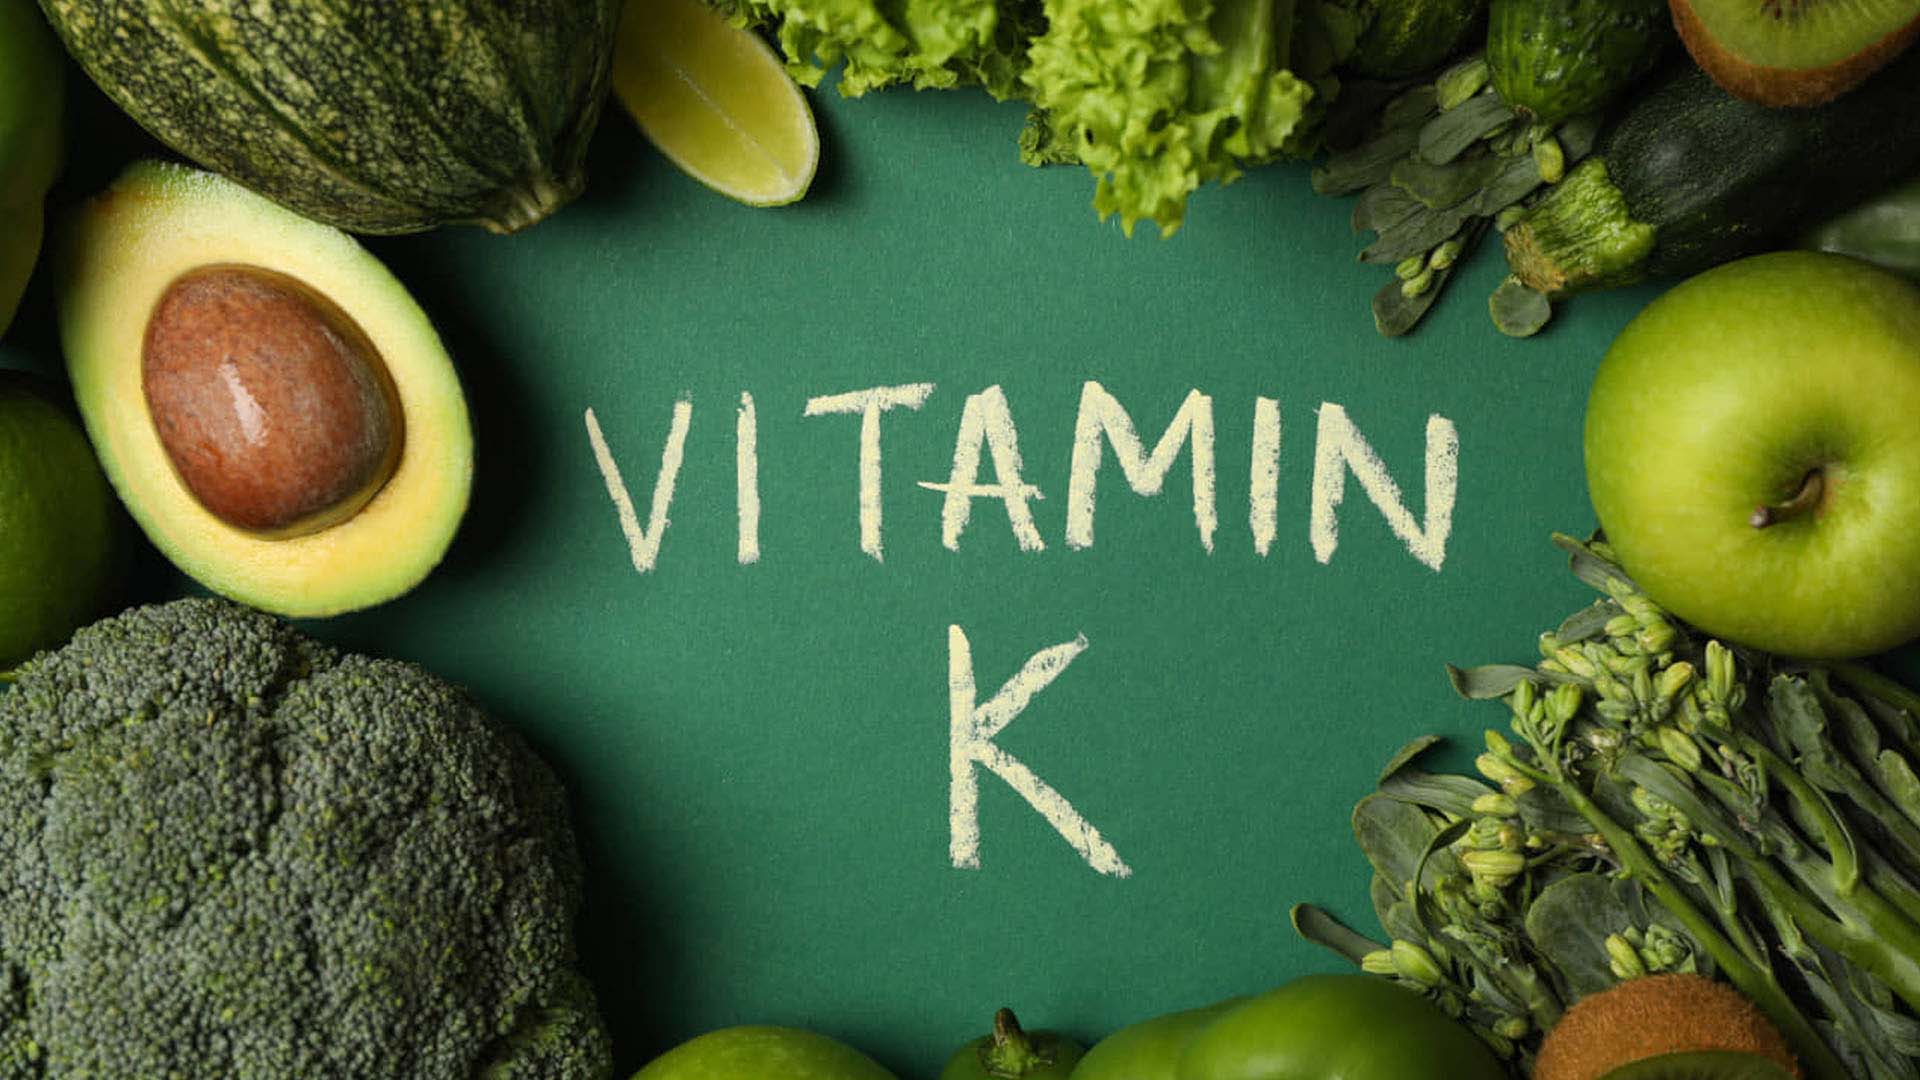 K Vitamini: Nedir, Nelerde Bulunur, Faydaları ve Eksikliğinin Belirtileri - Vitafenix